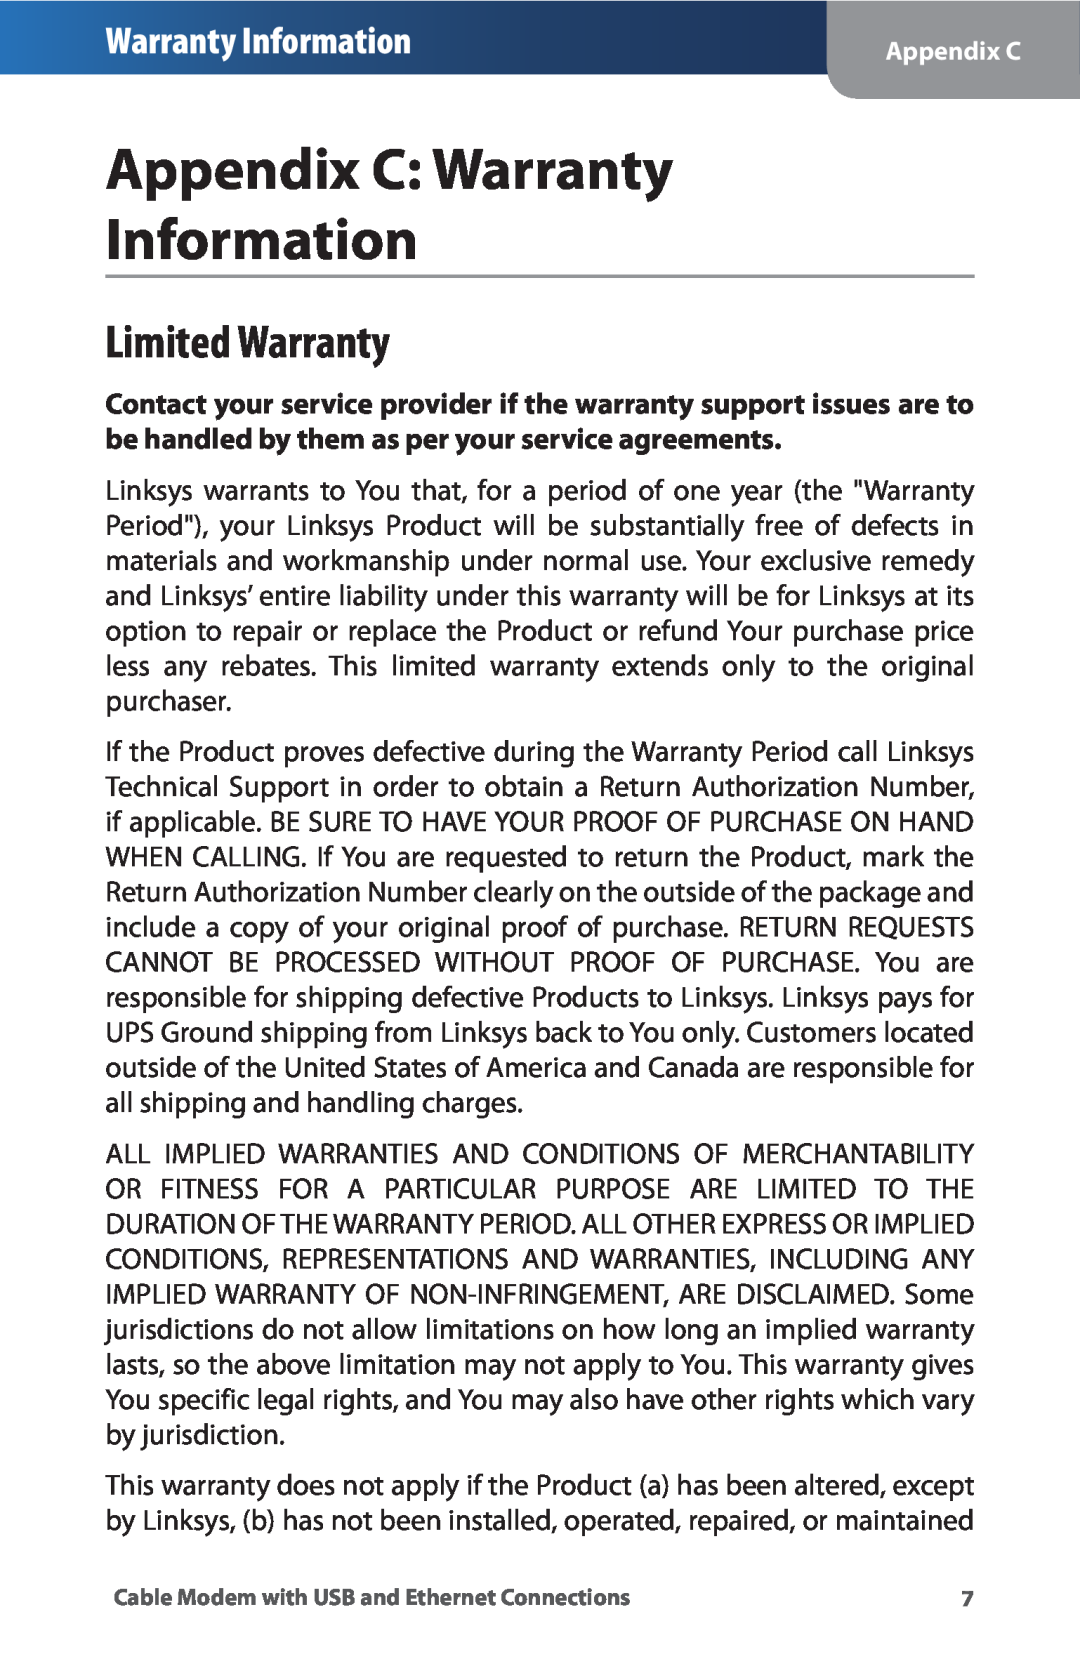 Linksys CM100 manual Appendix C Warranty Information, Limited Warranty 